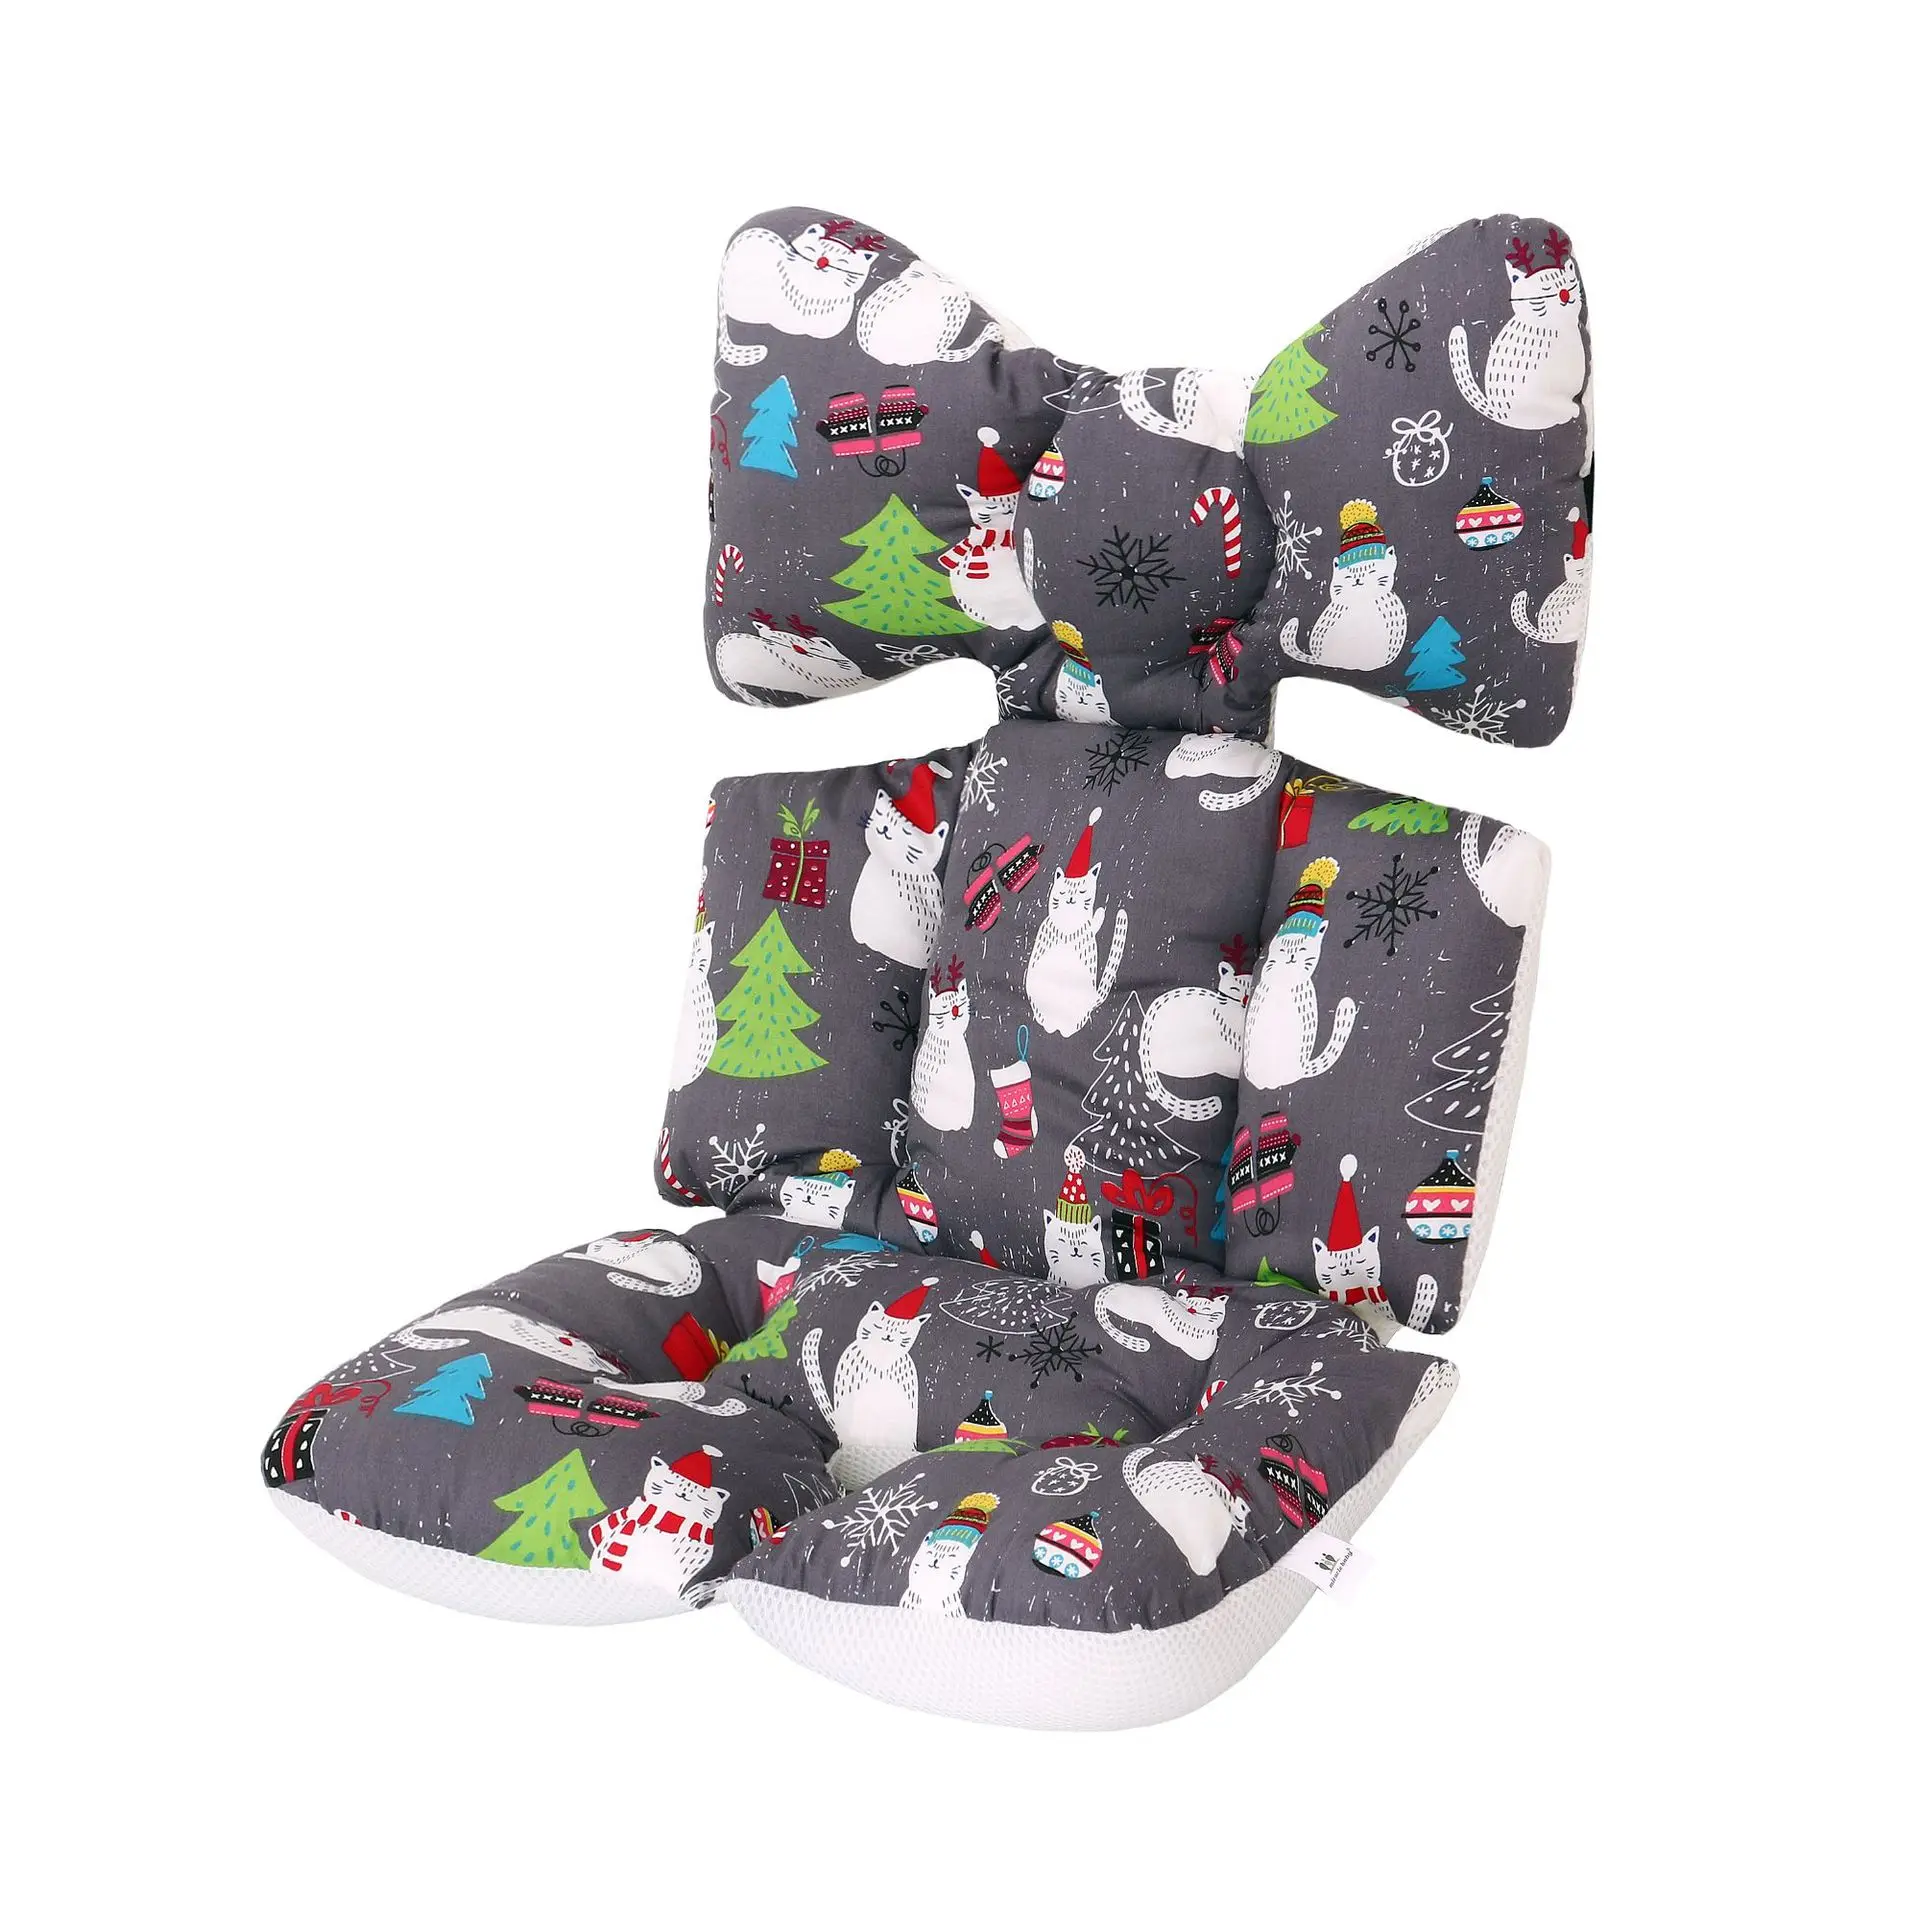 Подушечка Для сиденья детской коляски Толстая теплая Автомобильная подушка для сиденья Хлопок Спальные матрасы подушка для коляски коляска для новорожденного аксессуар - Цвет: CAT